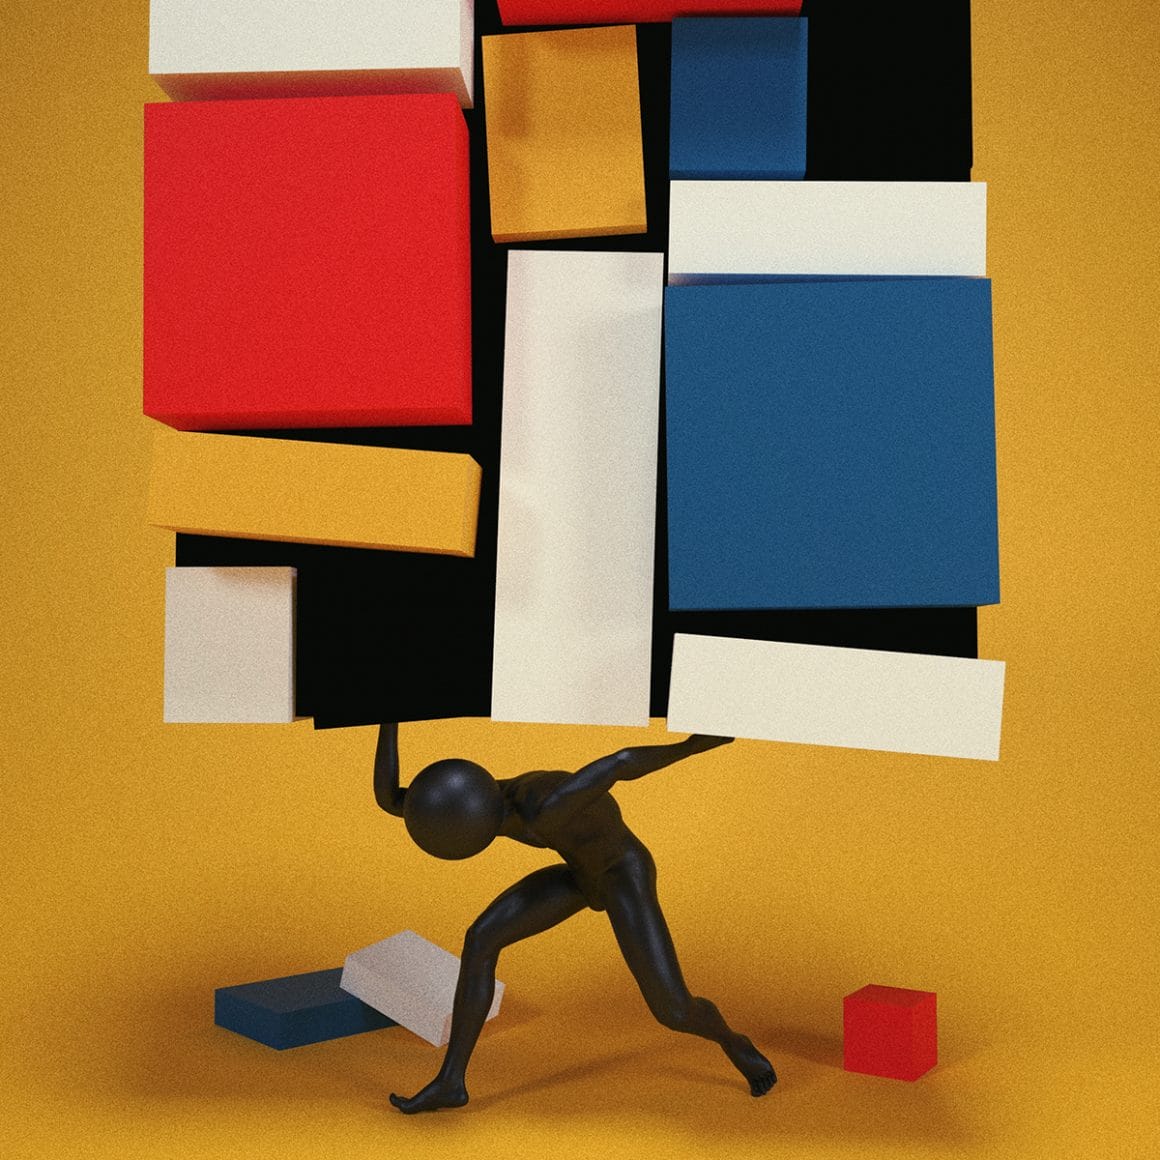 Composition with large red plane, Yellow, black, gray ans Blue par Elia Pellegrini. Un personnage soulève tel Atlas une création de Mondrian. 